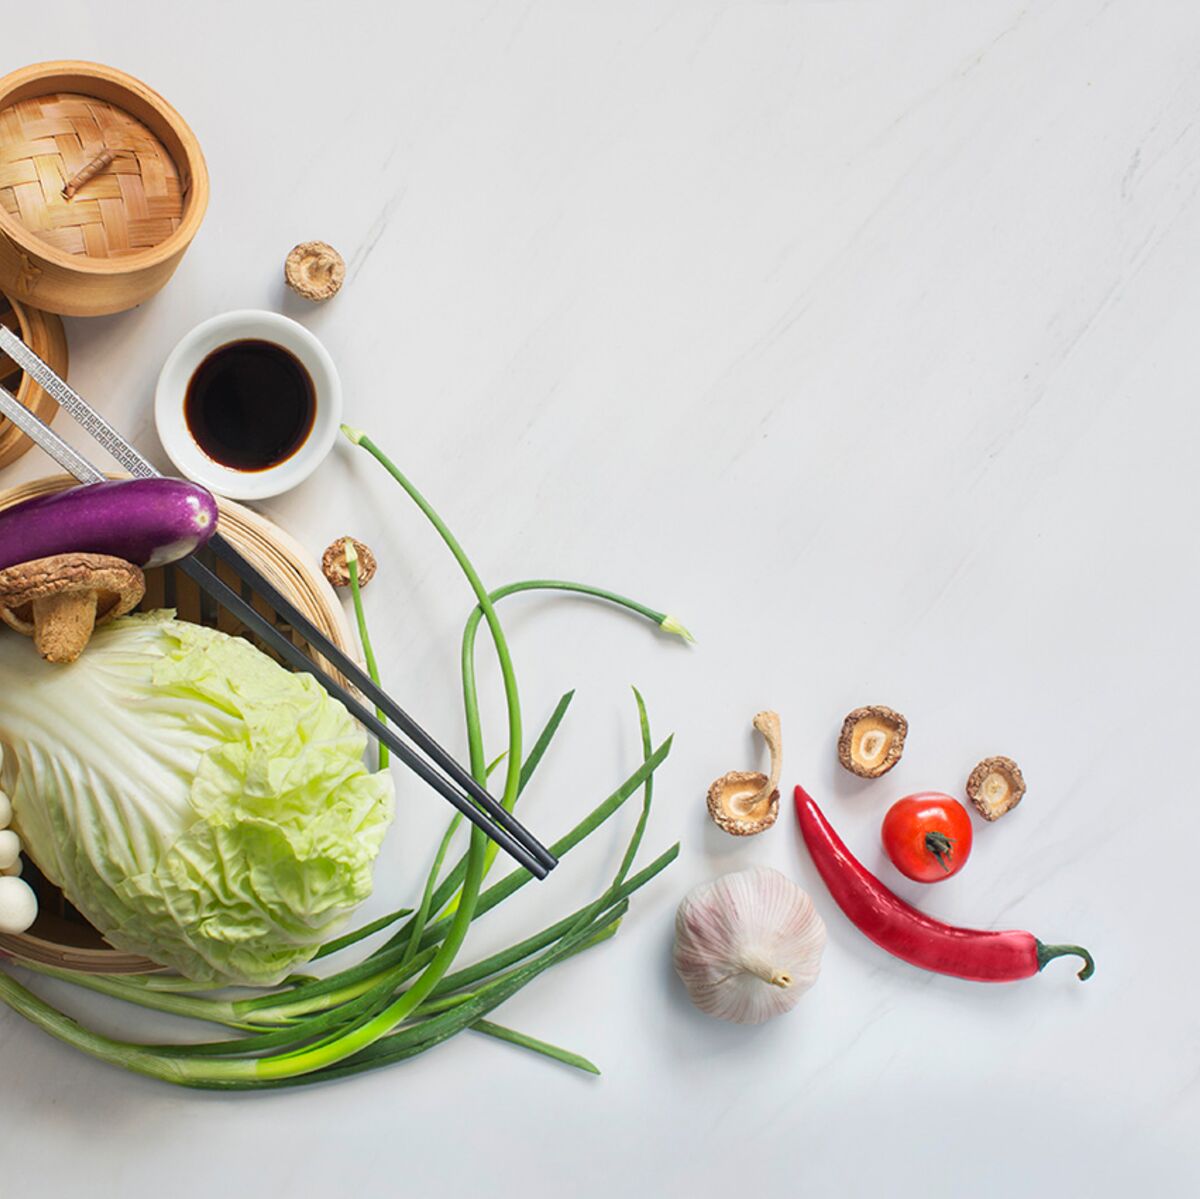 Nourriture asiatique - Top 10 des bienfaits nutritionnels sur la santé